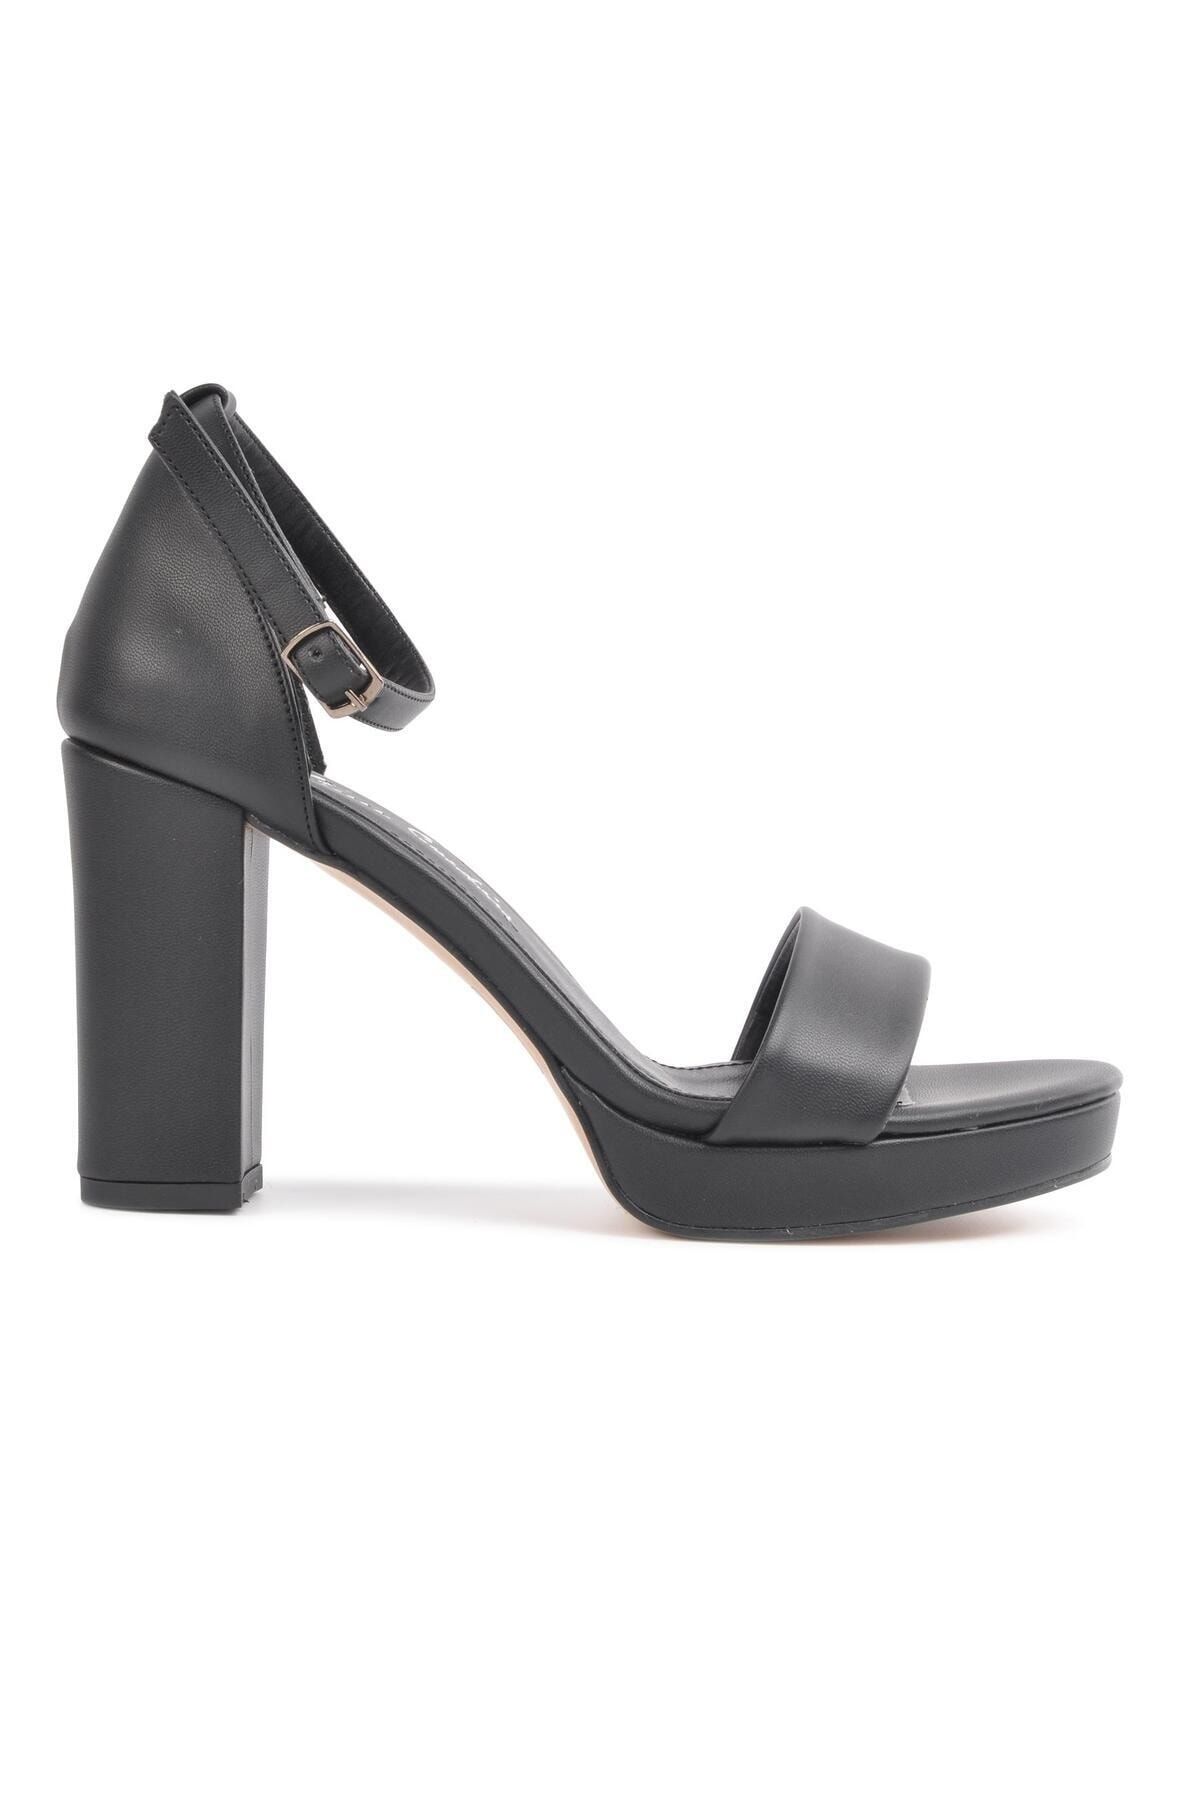 Pierre Cardin Pc-12432 Siyah Kadın Topuklu Ayakkabı